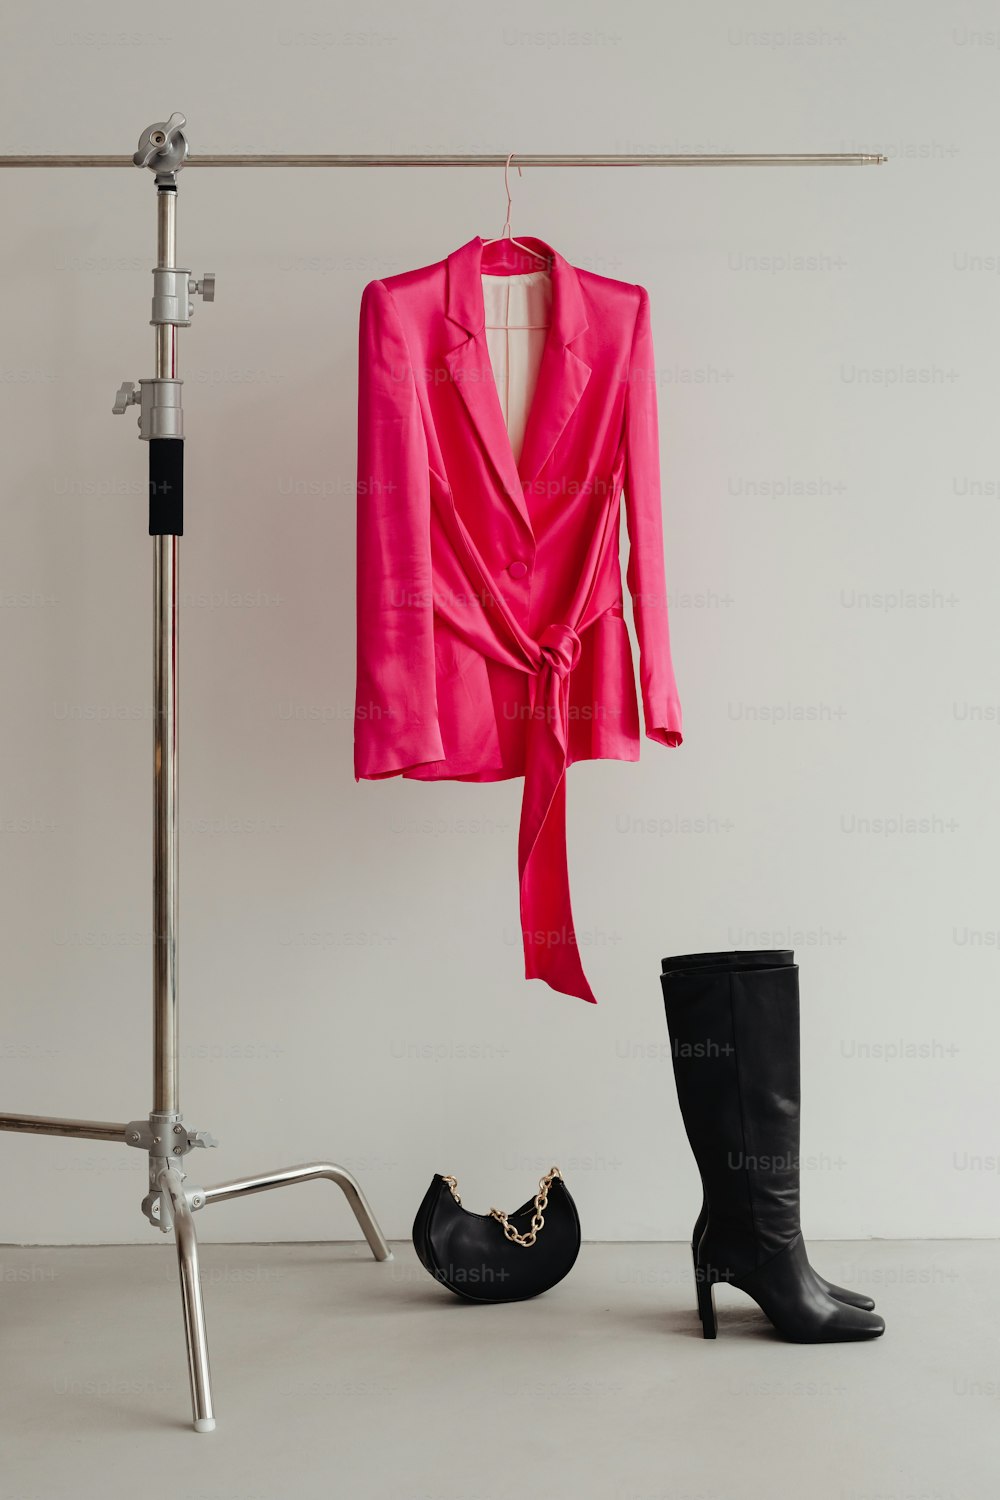 검은 부츠 한 켤레와 옷걸이에 걸려 있는 분홍색 재킷